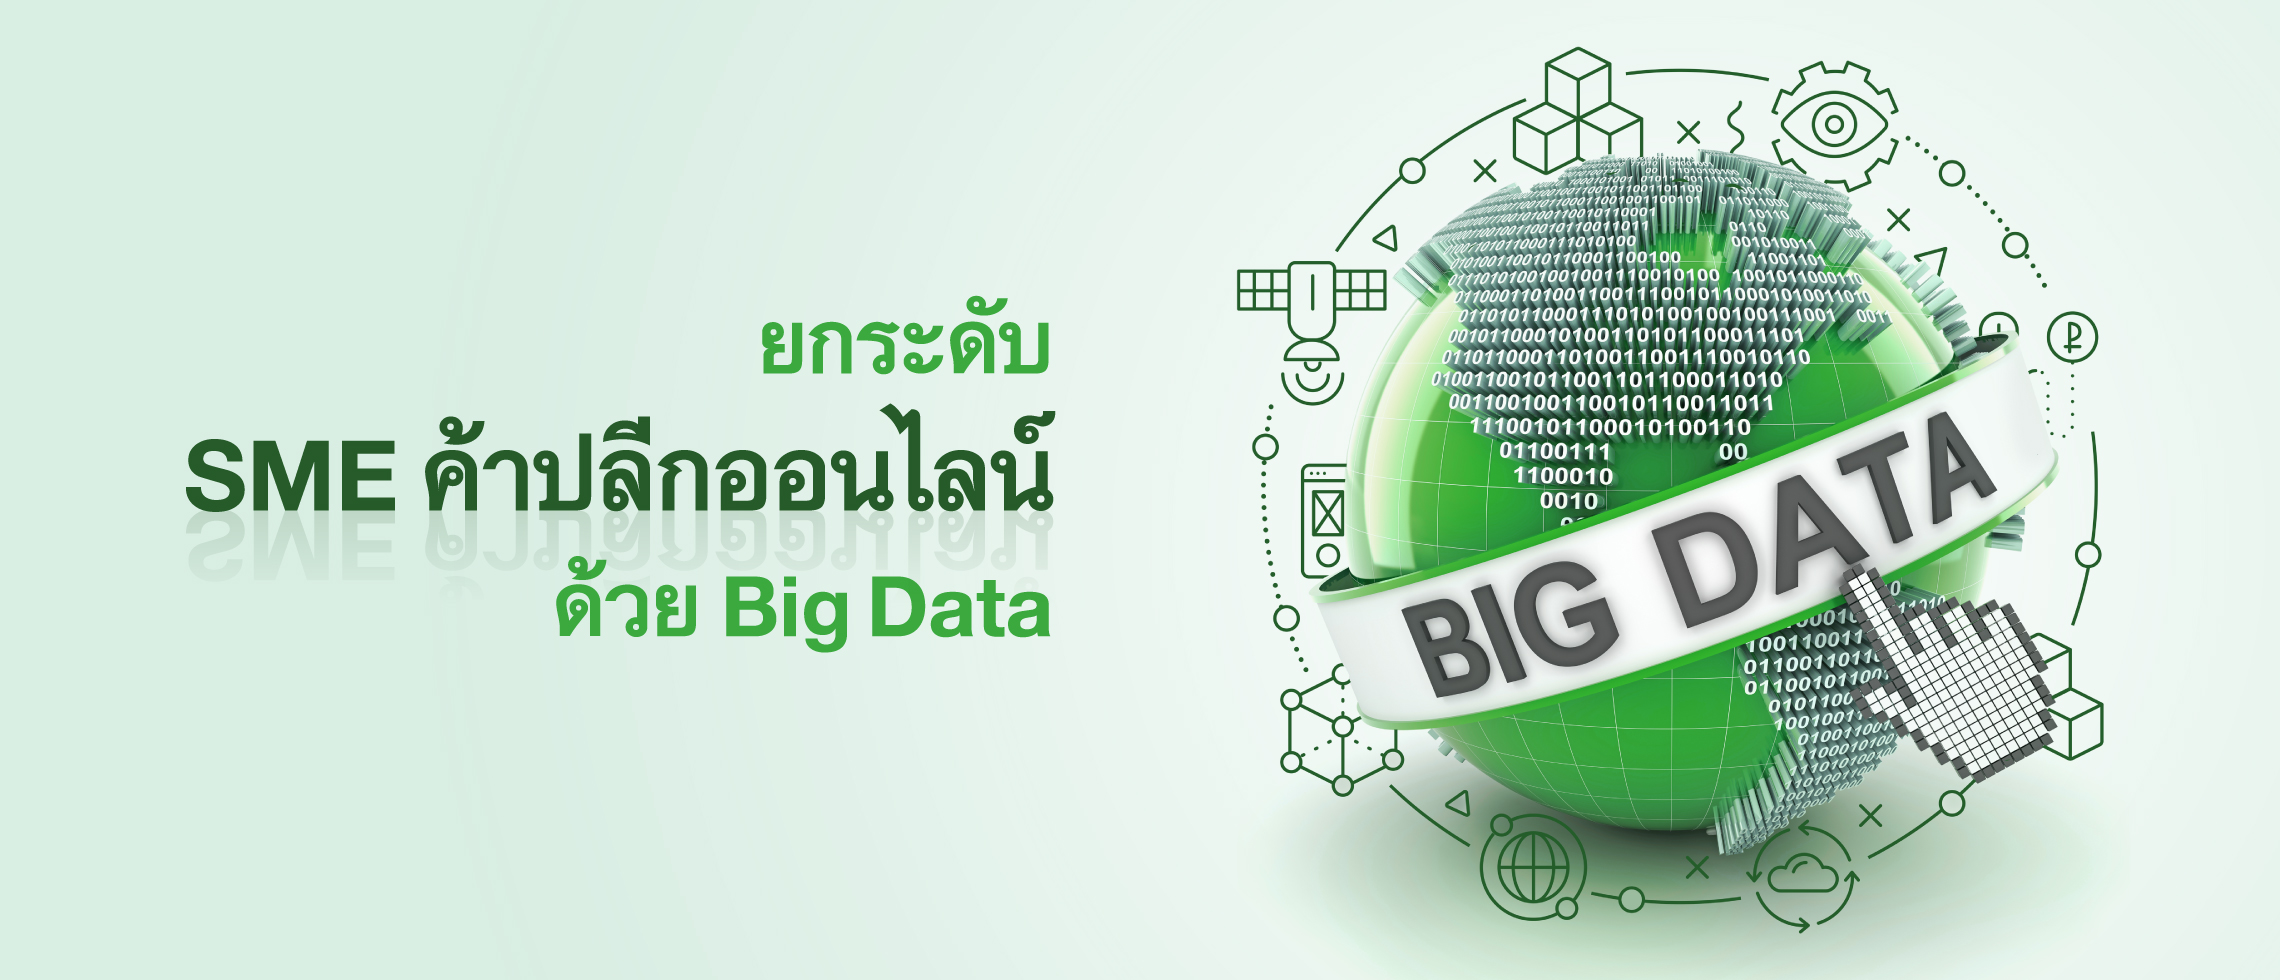 ยกระดับ Sme ค้าปลีกออนไลน์ ด้วย Big Data - ธนาคารกสิกรไทย